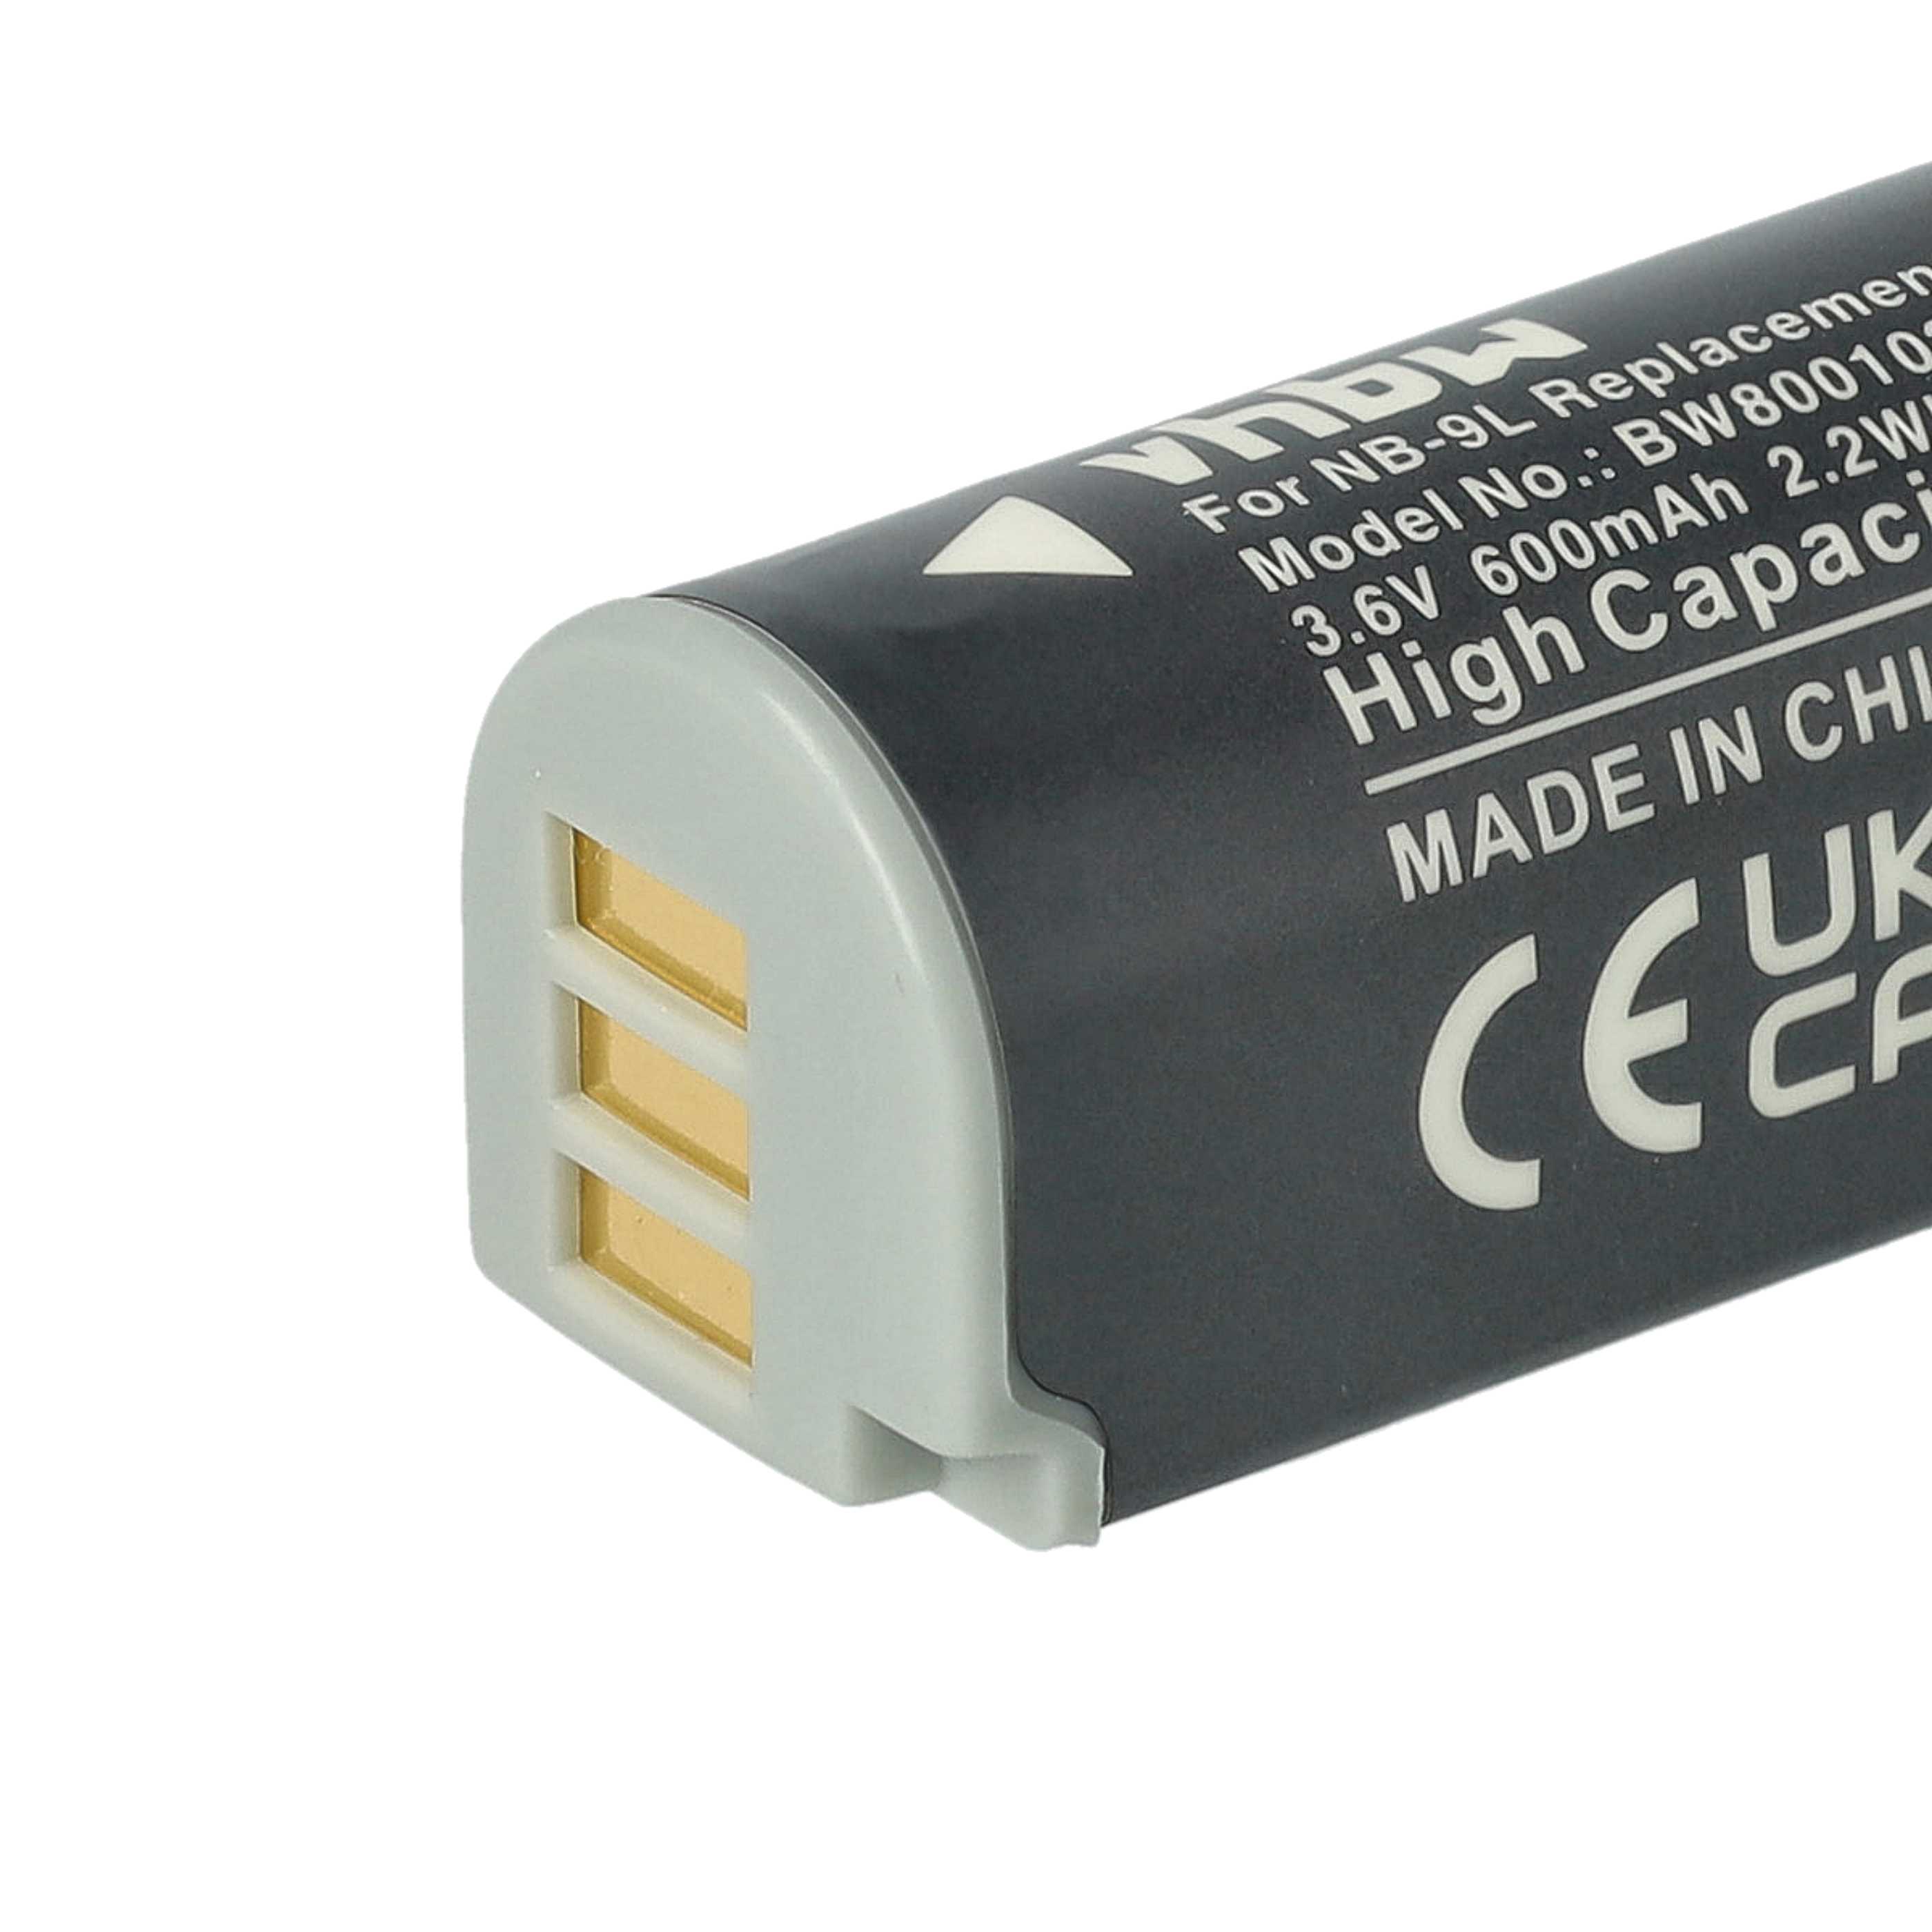 Batterie remplace Canon NB-9L pour appareil photo - 600mAh 3,6V Li-ion